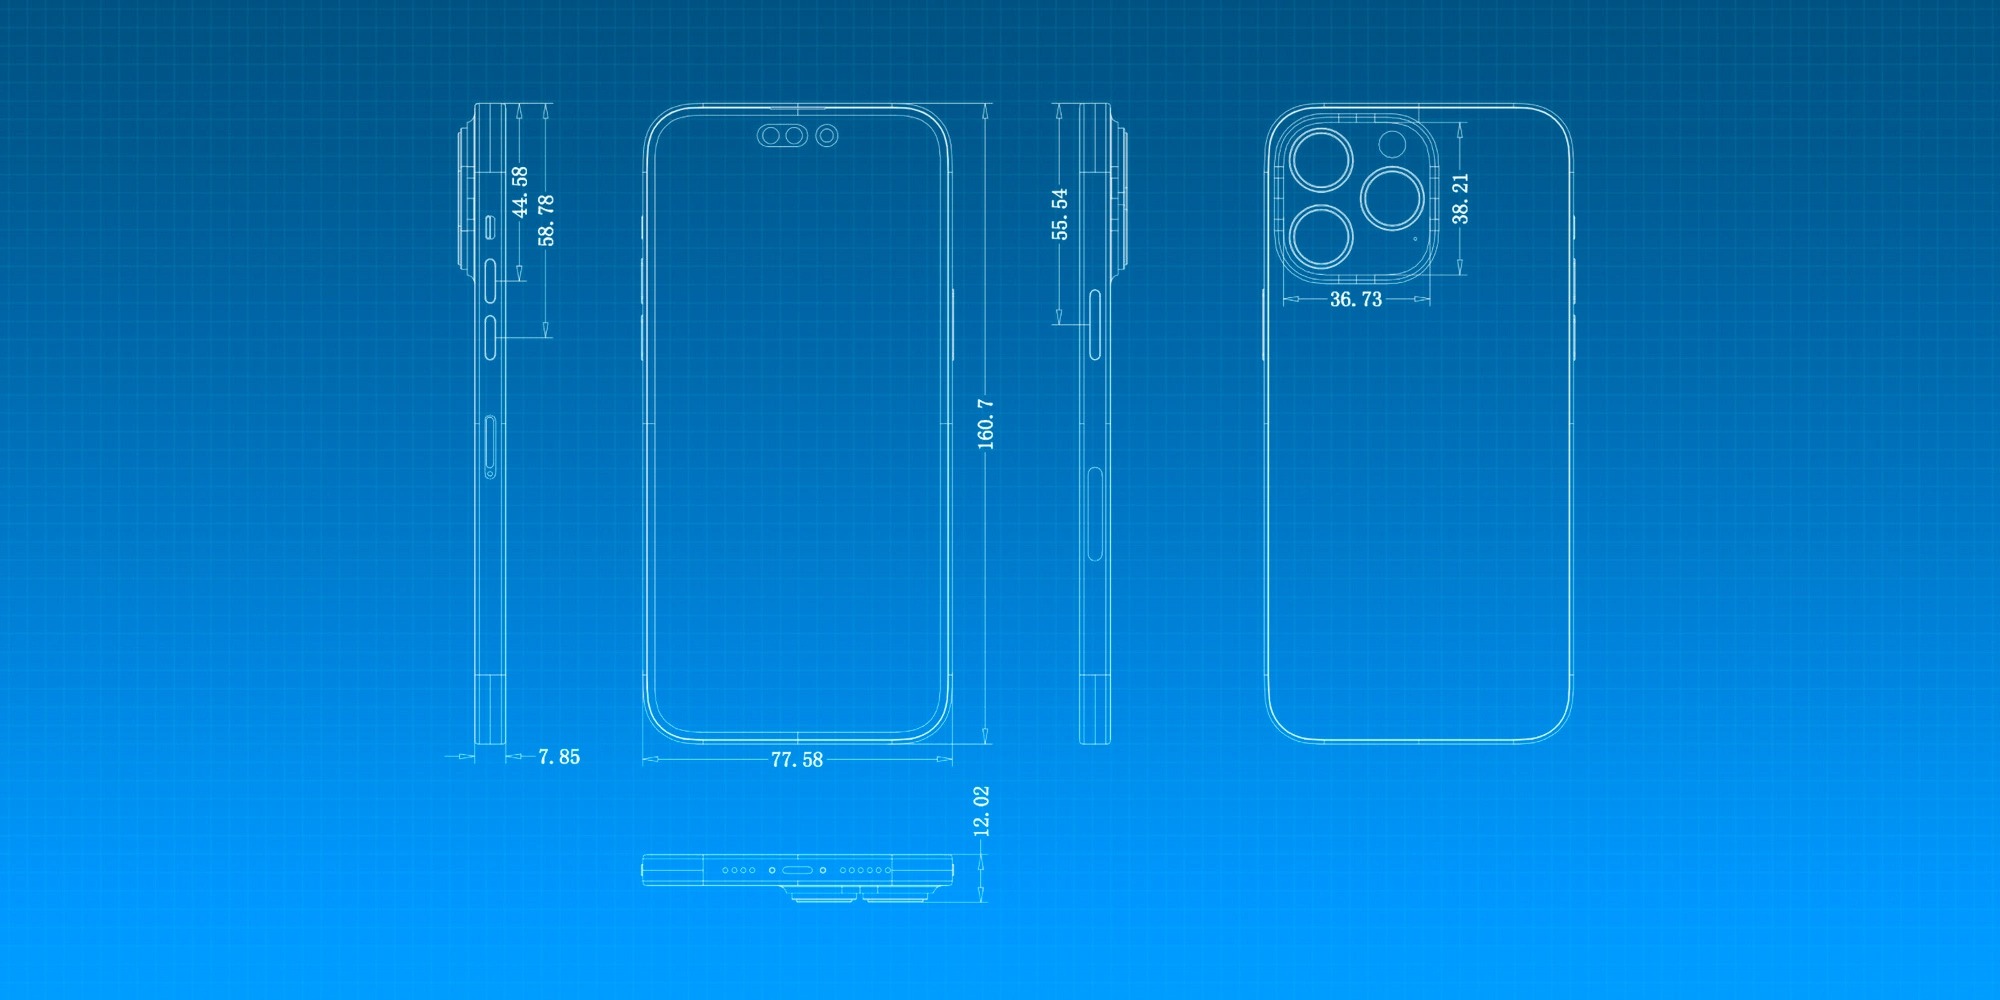 CAD, iPhone 14 Pro, camera: Điện thoại iPhone 14 Pro sẽ được thiết kế với công nghệ CAD tiên tiến nhất, giúp cho thiết kế trở nên chính xác và tinh tế hơn bao giờ hết. Camera của sản phẩm cũng được nâng cấp đáng kể, hứa hẹn mang đến những bức ảnh chất lượng cao nhất. Hãy cùng xem ảnh liên quan để khám phá sự đột phá của iPhone 14 Pro.